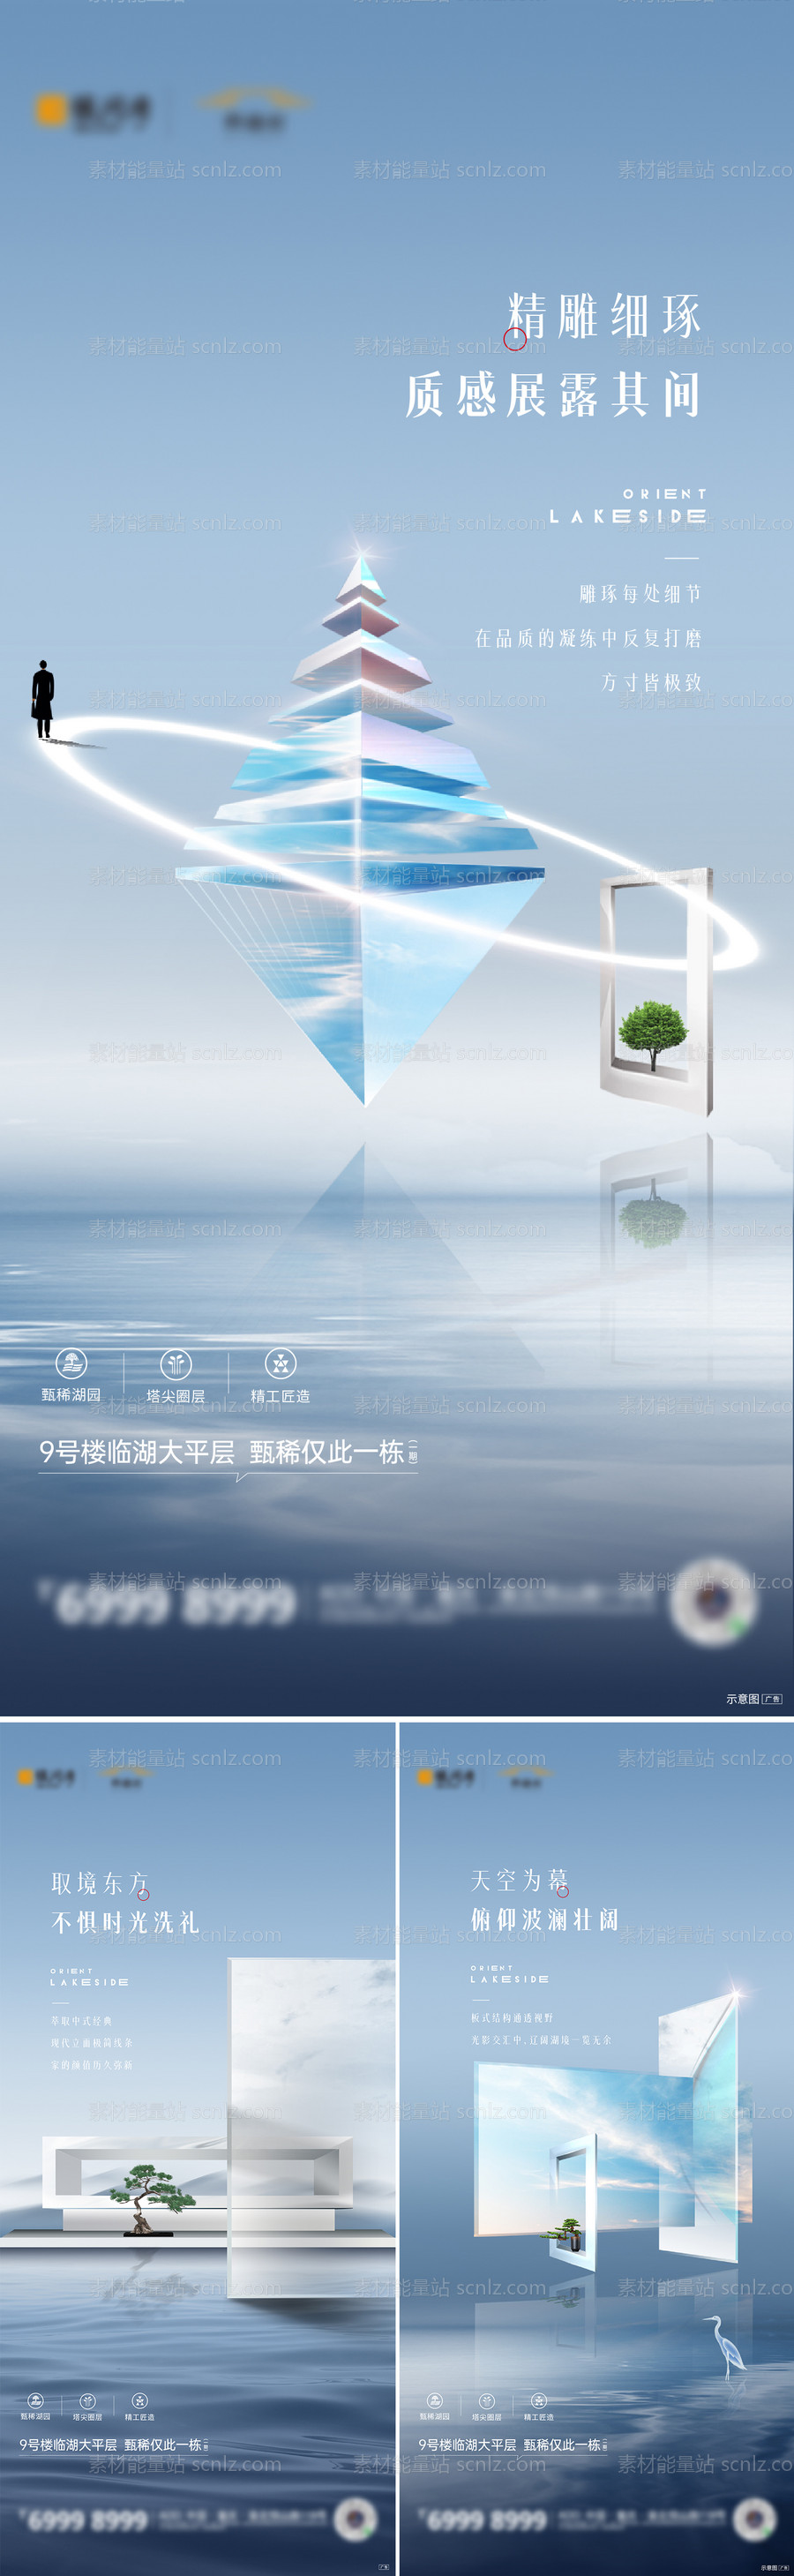 素材能量站-轻奢水岸大平层系列海报